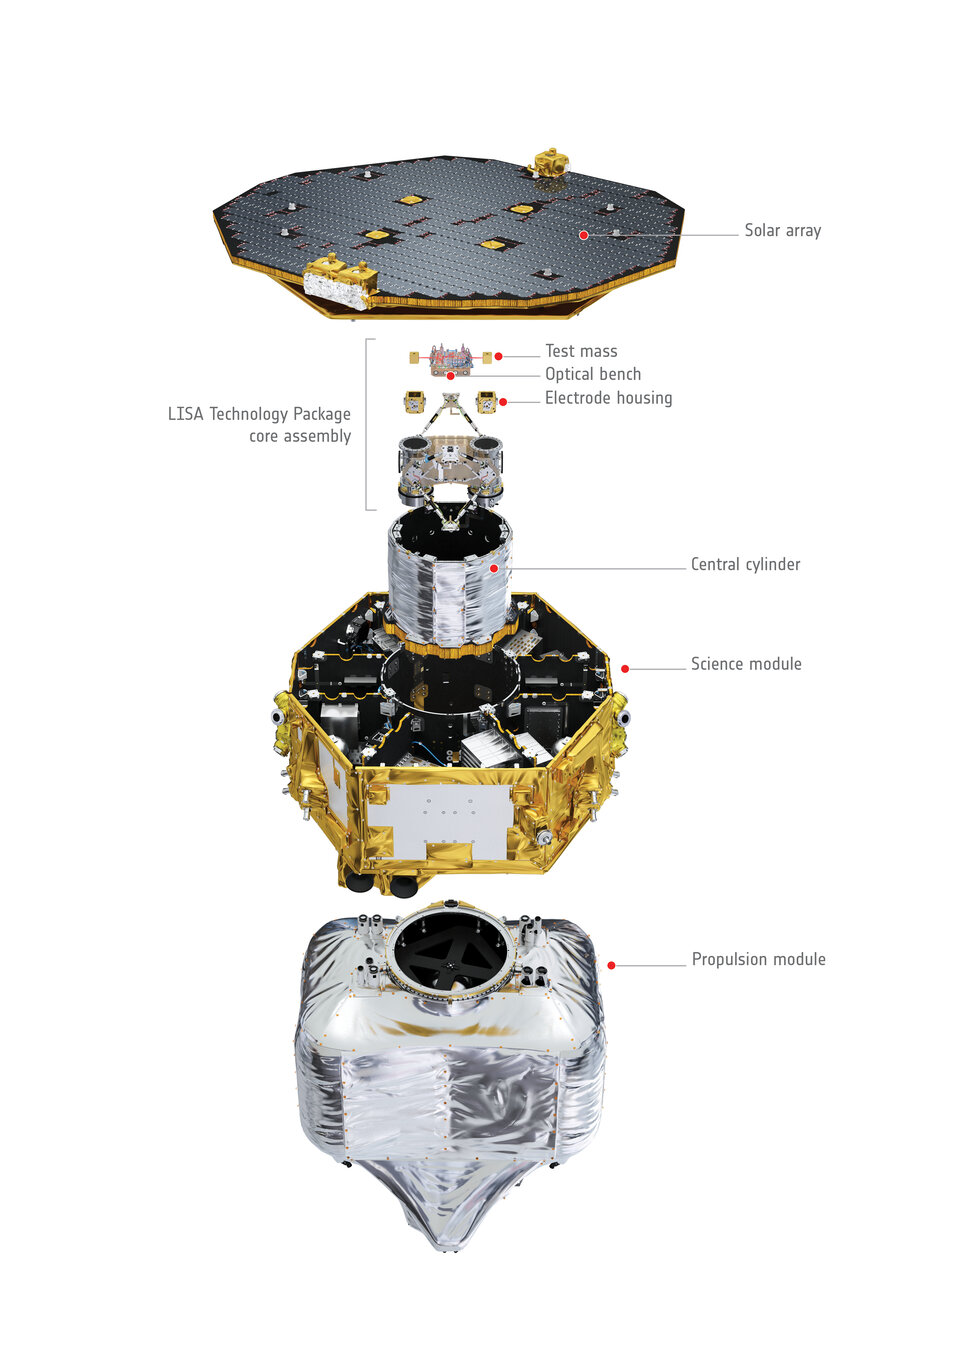 Μια όψη των επιμέρους μονάδων του LISA Pathfinder 